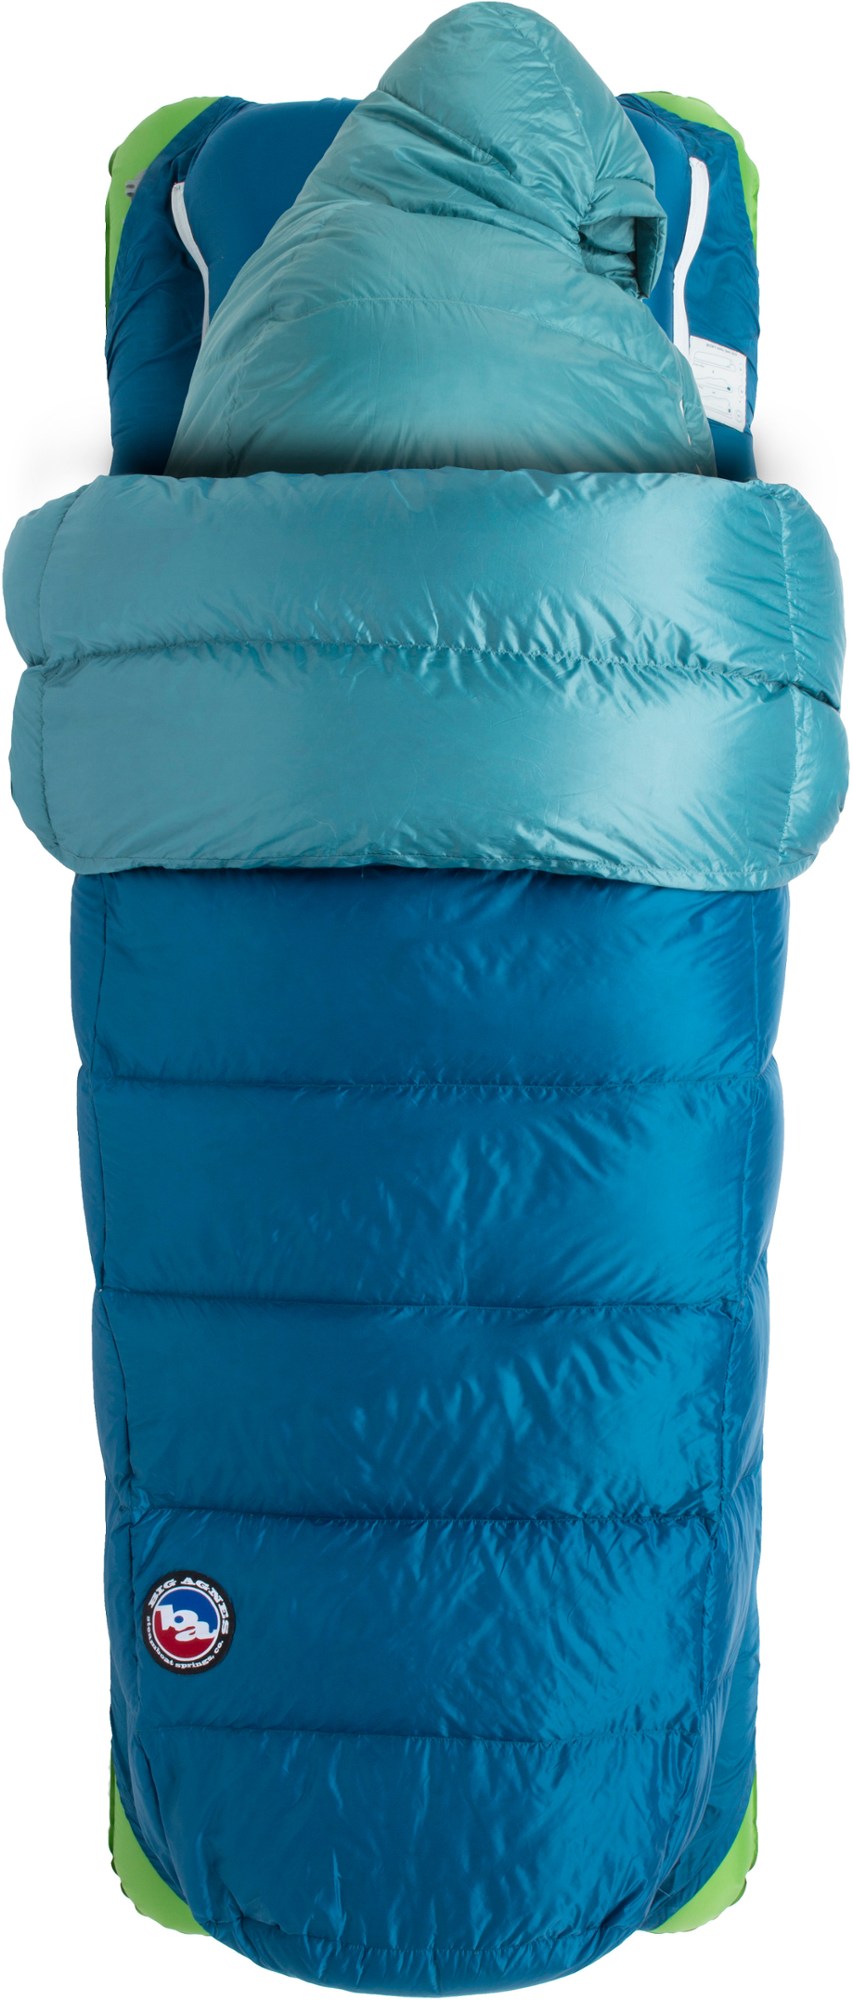 спальный мешок echo park 0 big agnes зеленый Спальный мешок Roxy Ann 3N1 30 - женский Big Agnes, синий